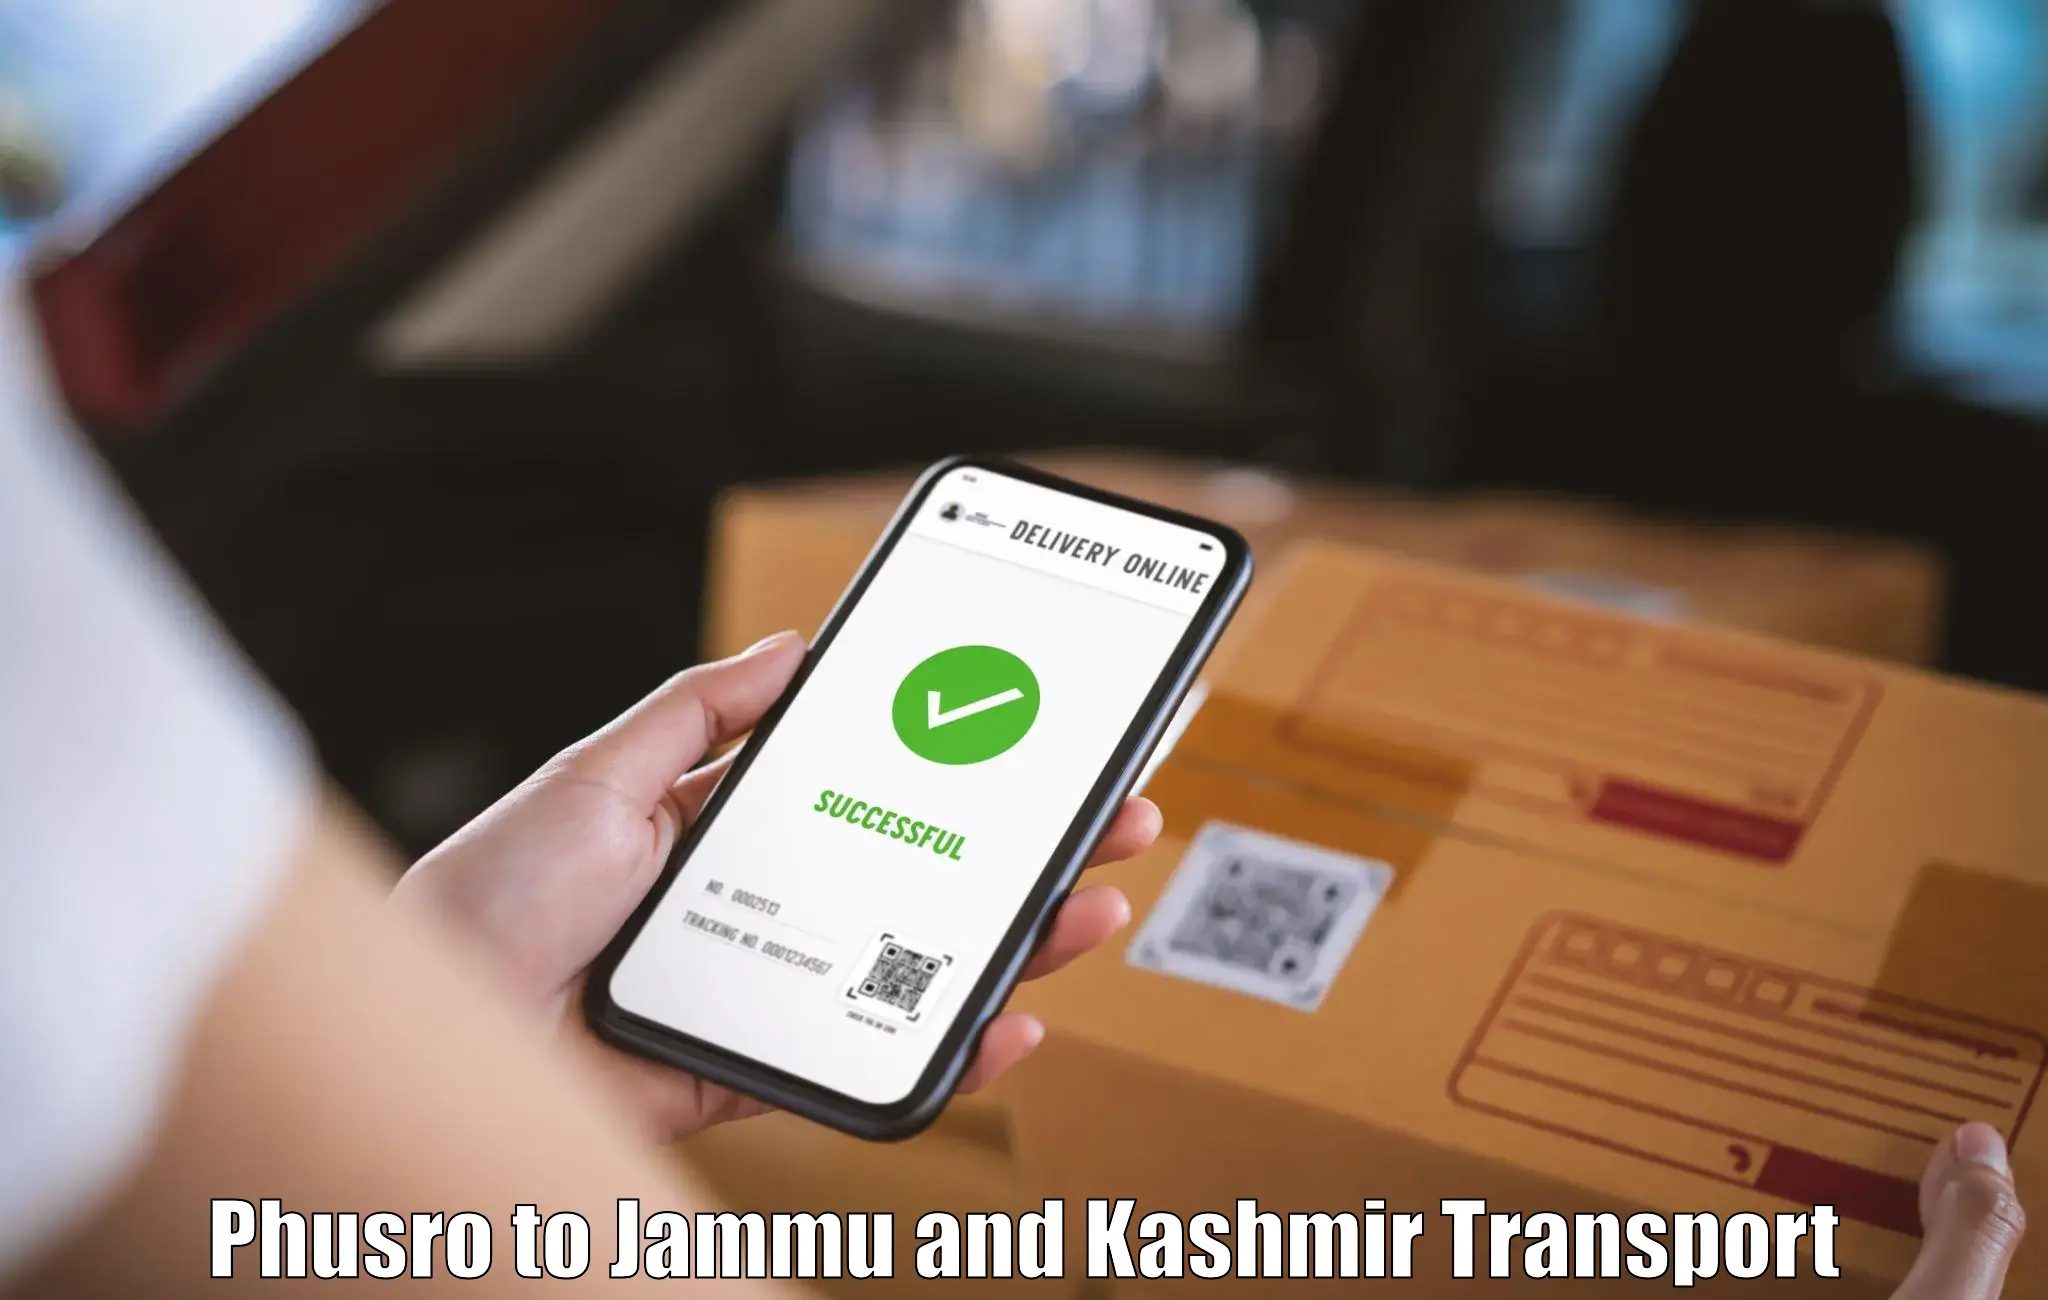 Nearby transport service Phusro to Jammu